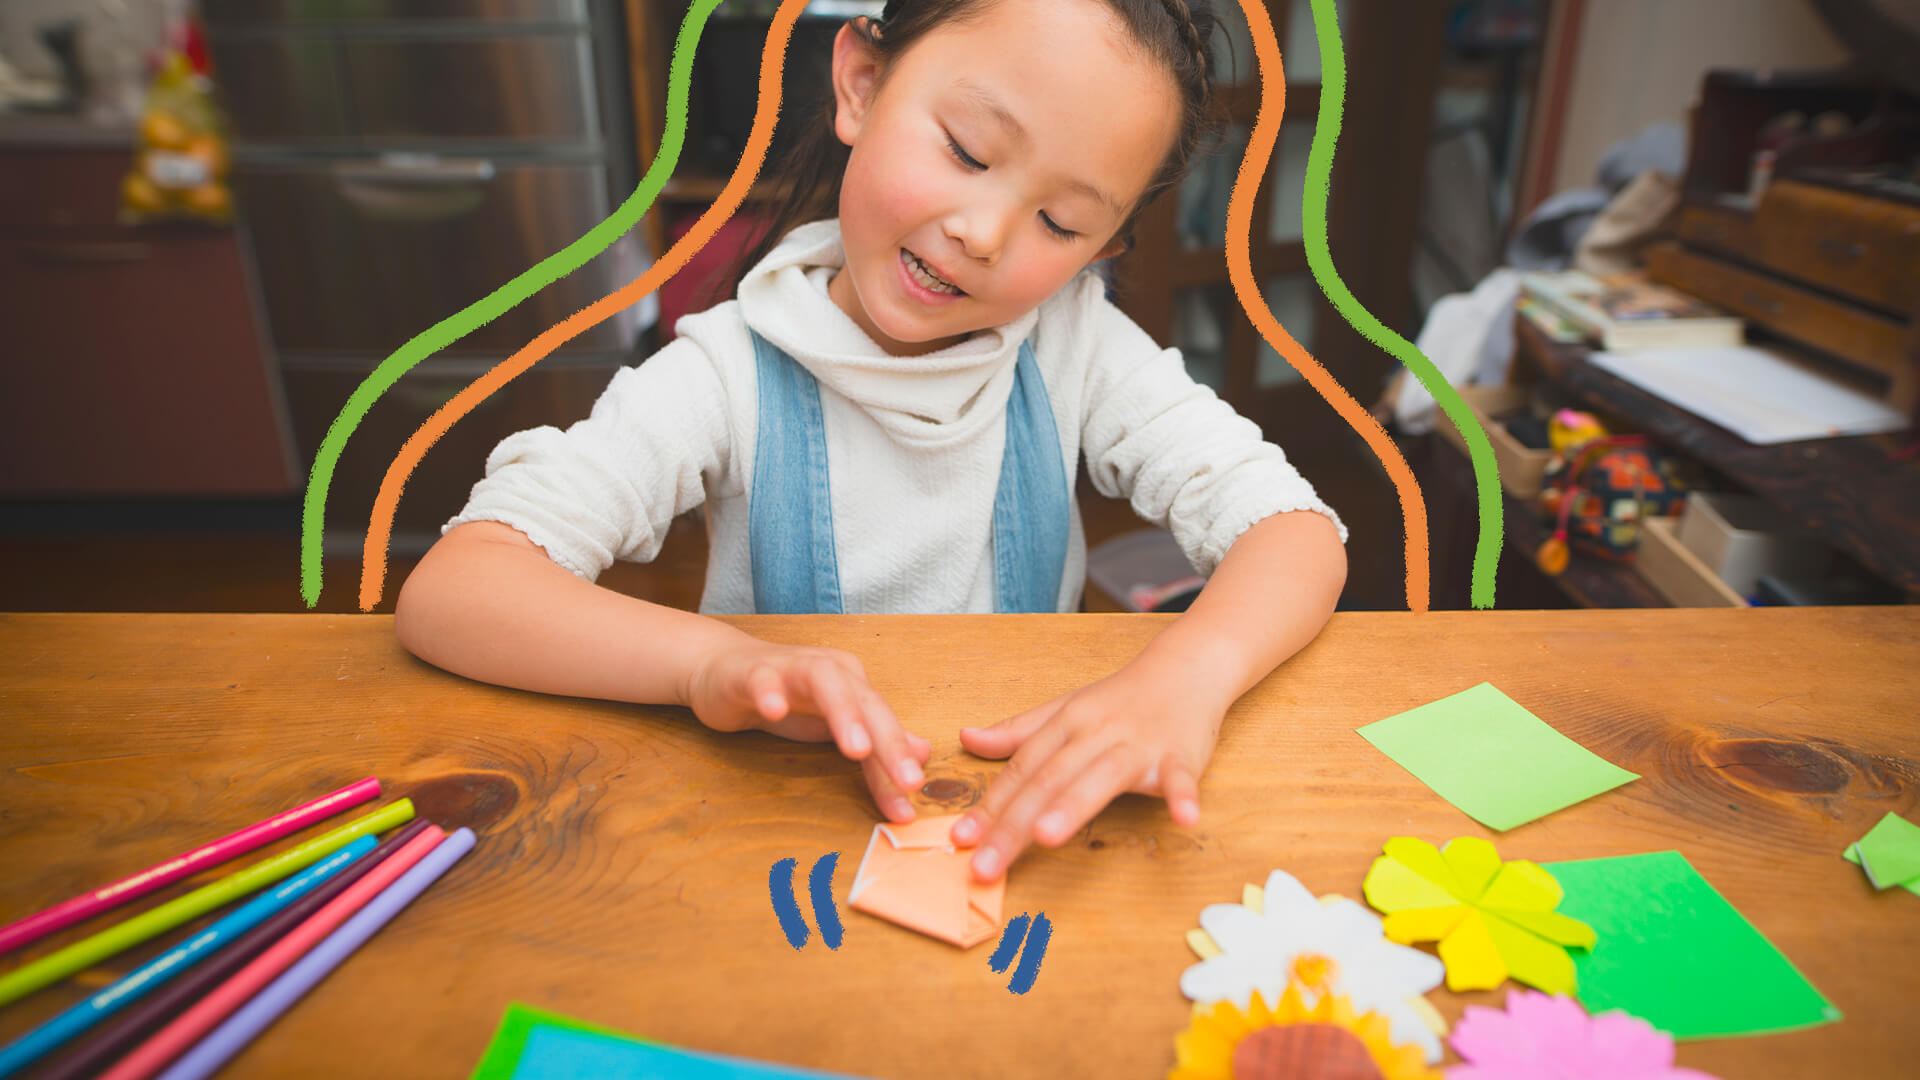 Na foto, uma criança de descendência asiática dobra um origami em uma mesa de madeira.